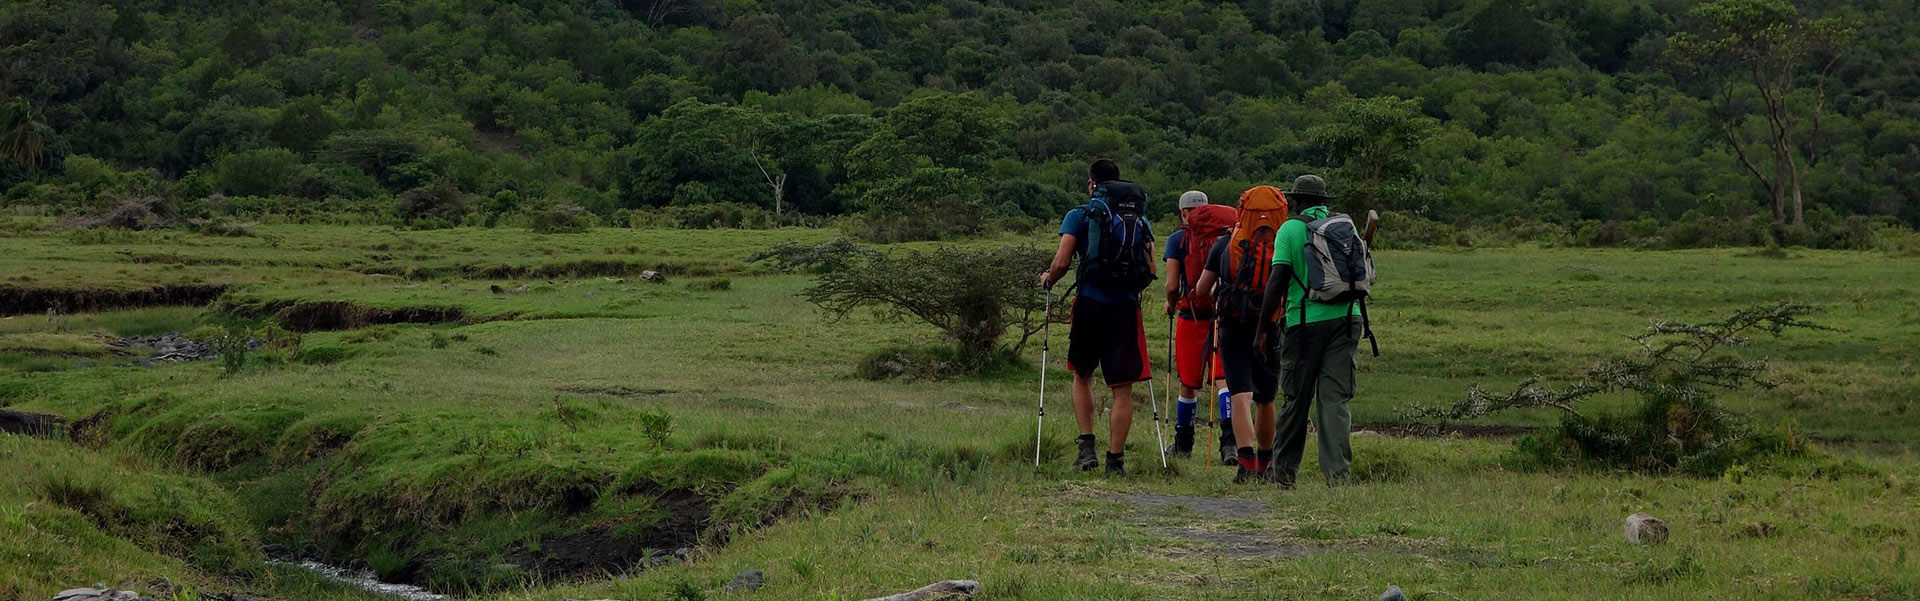 Typical Trekking Day on Mount Meru